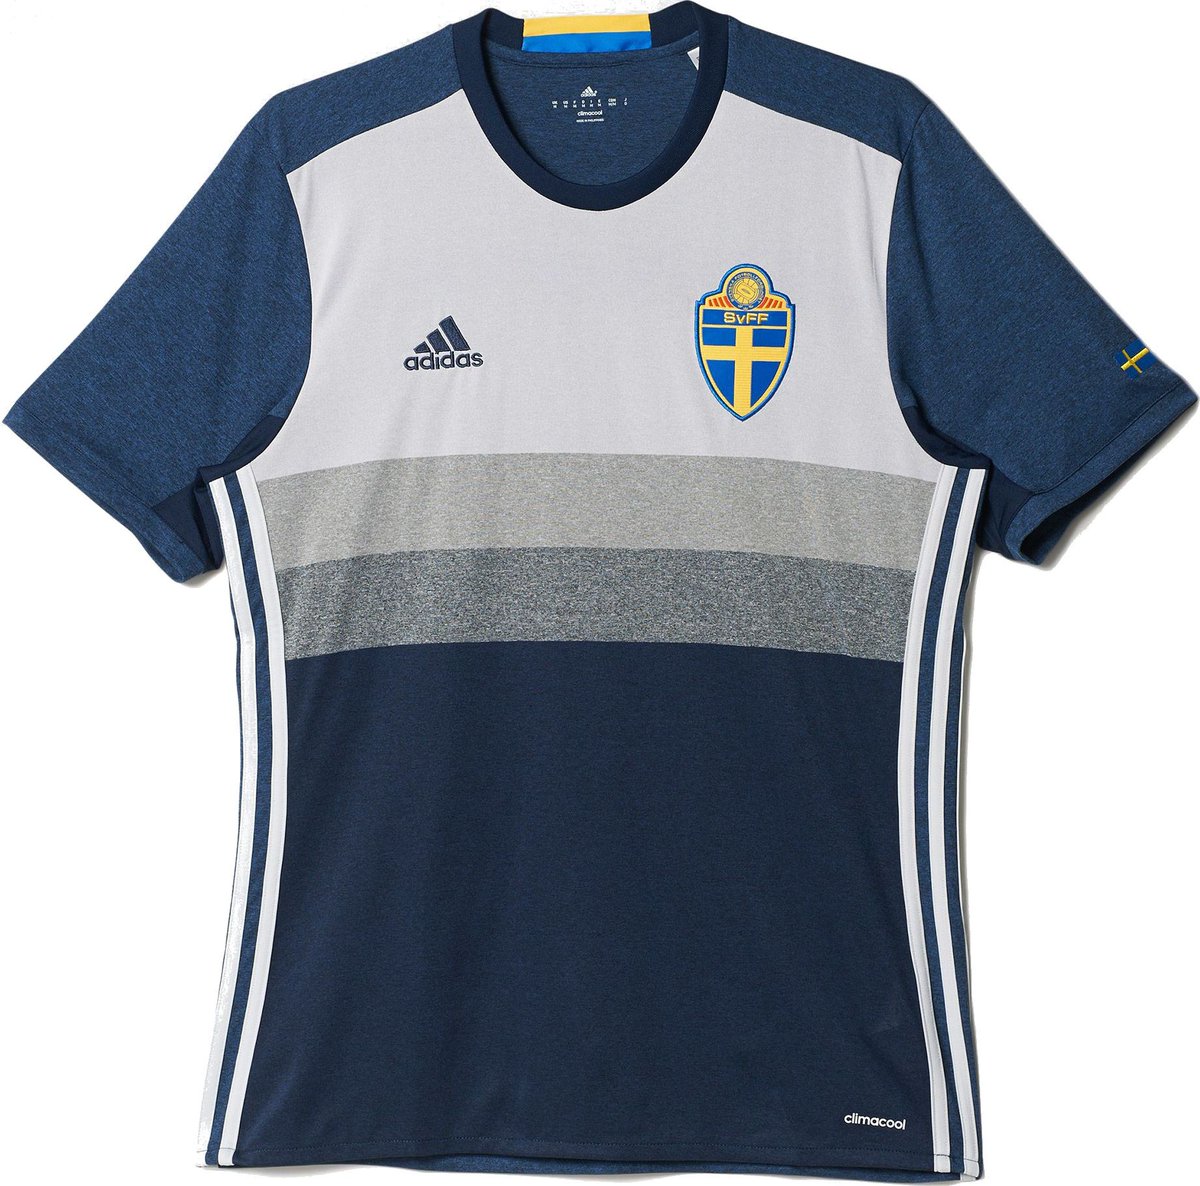 ユニ11 スウェーデン代表 ユーロ16 アウェイユニフォーム T Co Crzxzlt4wa Jerey Shirt Euro16 スウェーデン代表のユーロ16アウェイユニフォーム T Co Krdtc9m8eo